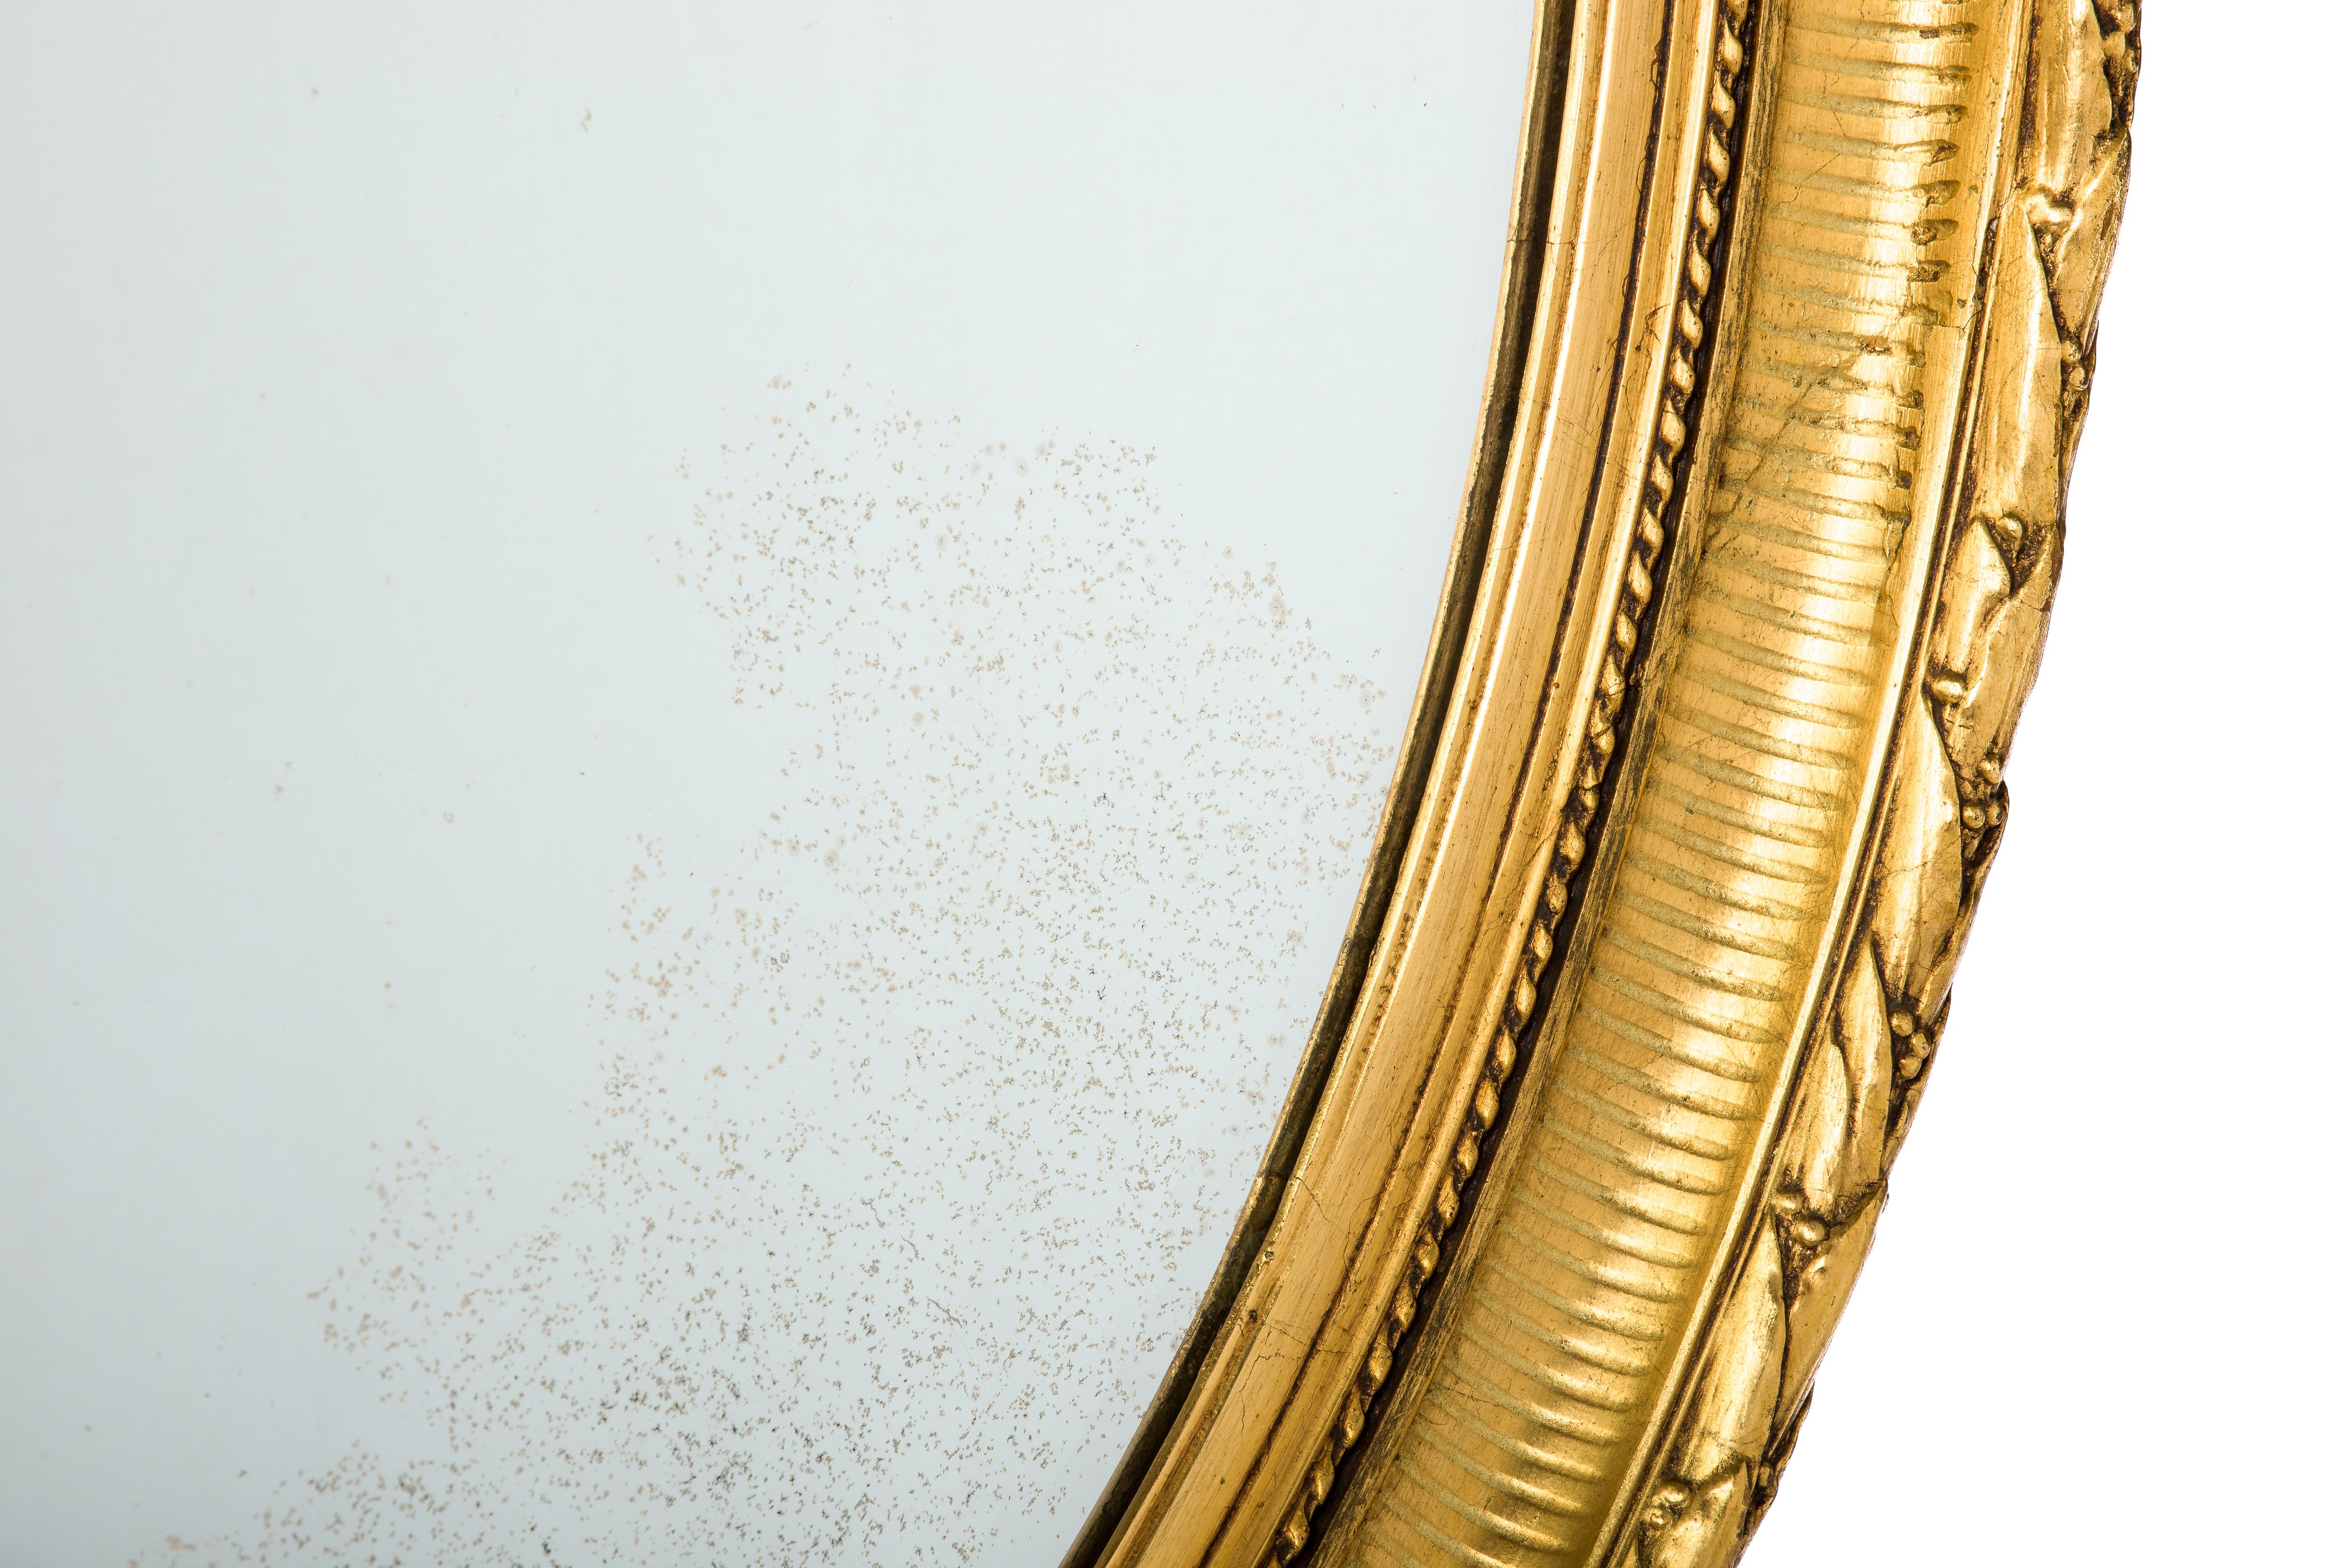 Ce magnifique grand miroir ovale doré à la feuille d'or a été fabriqué dans le nord de la France à la fin du XIXe siècle, vers 1890. Le miroir a un cadre en bois de tilleul massif, lissé et enrichi de moules en plâtre. 
La partie la plus élevée est